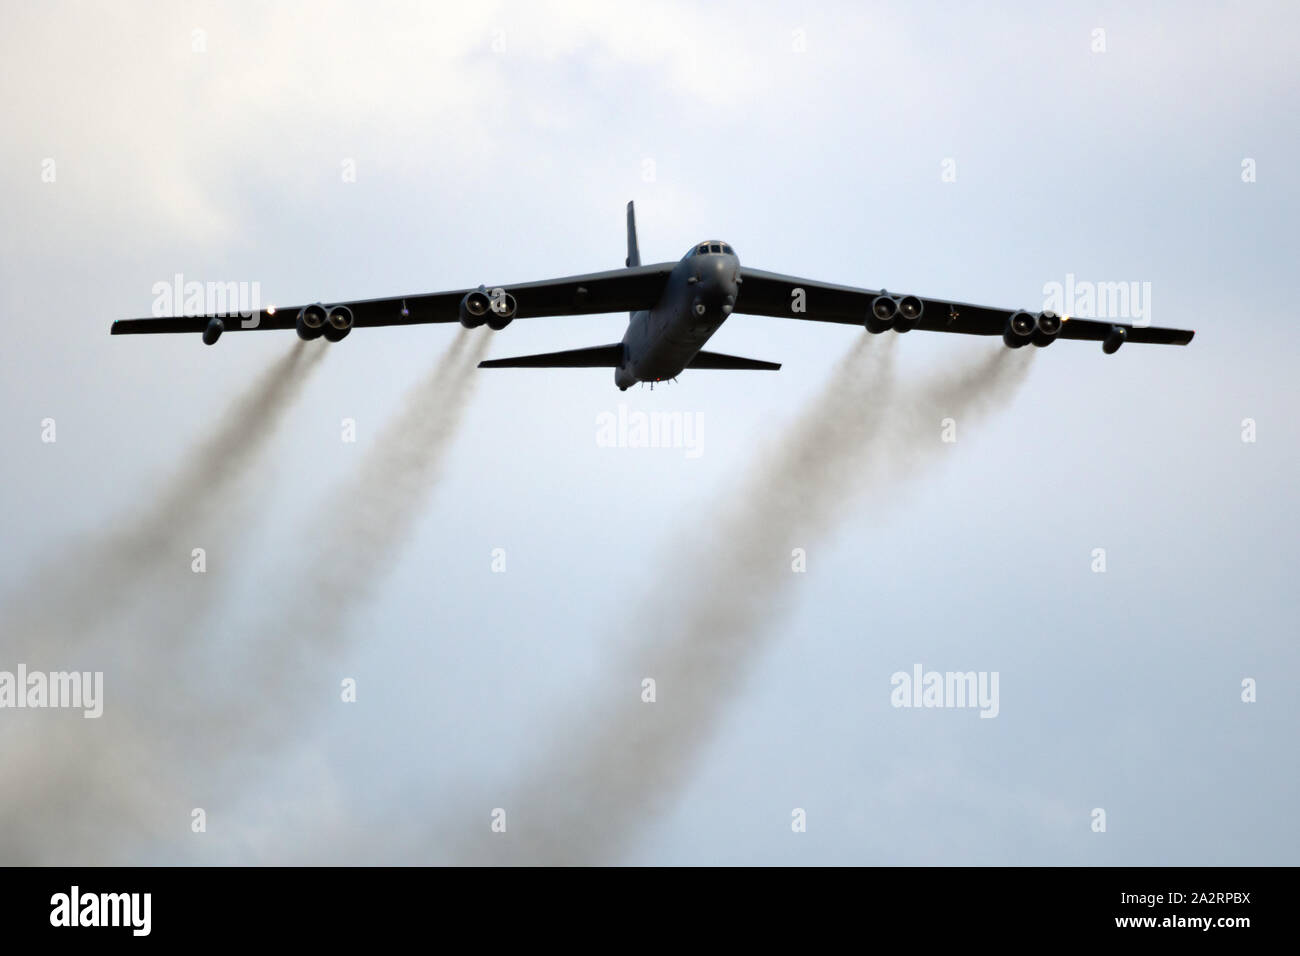 SANICOLE, BELGIQUE - Sep 13, 2019 : US Air Force Boeing B-52 Stratofortress bomer avion effectuant un pass au coucher du soleil Sanice meeting aérien. Banque D'Images